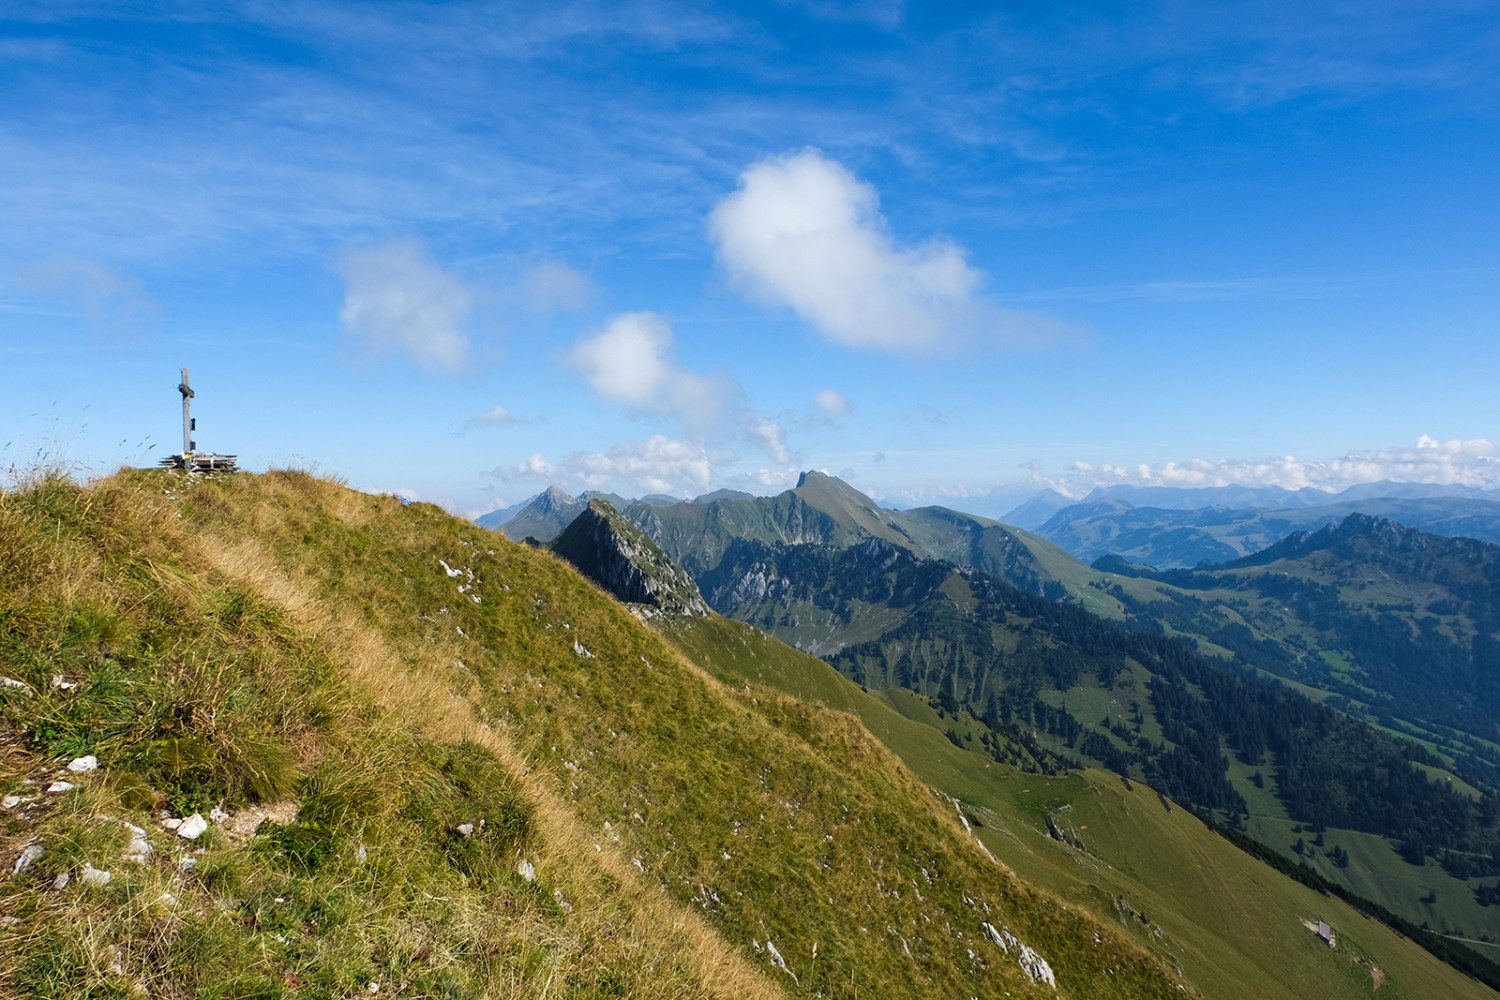 Gipfelkreuz auf dem Schopfenspitz. In der Gamelle befindet sich eine 
Rolle mit dem Panorama der Berge.
